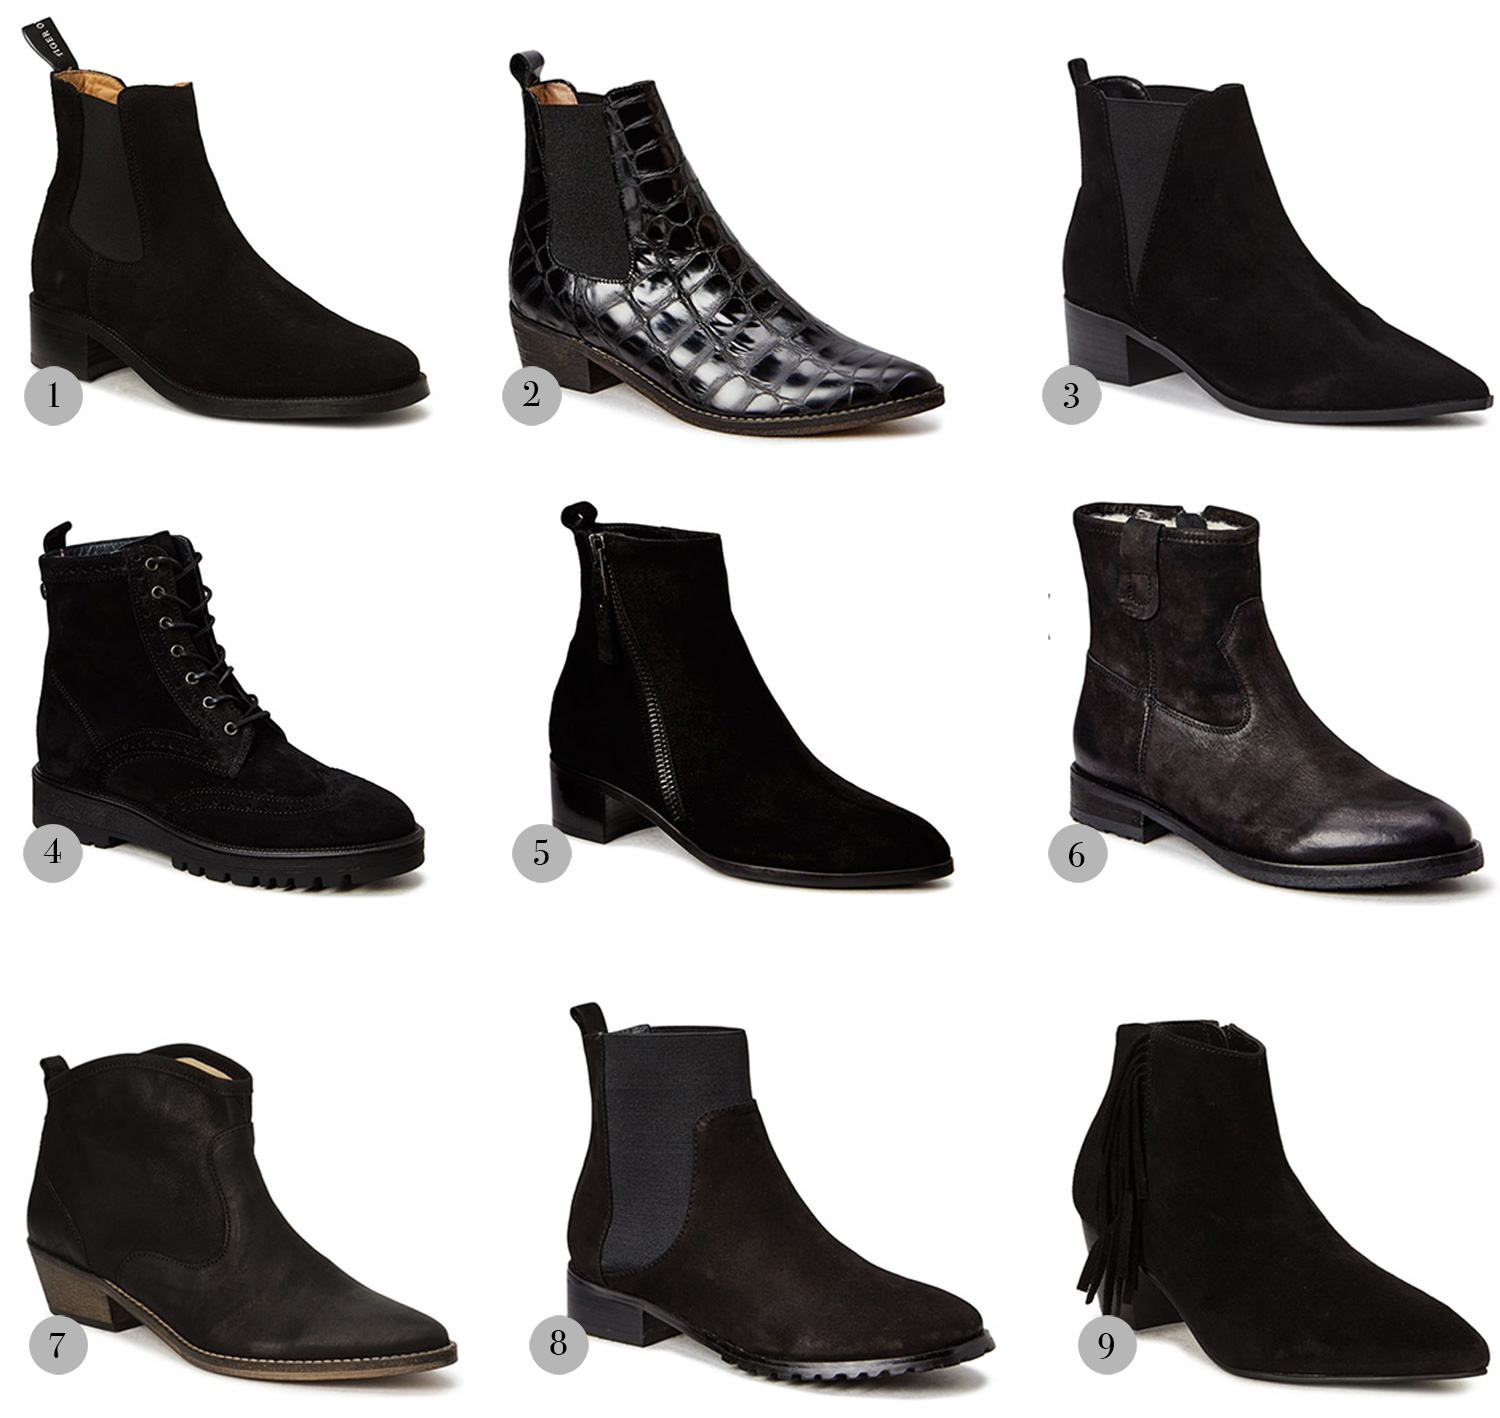 at tilføje backup træk vejret Ankle boots for everyday use - Christina Dueholm